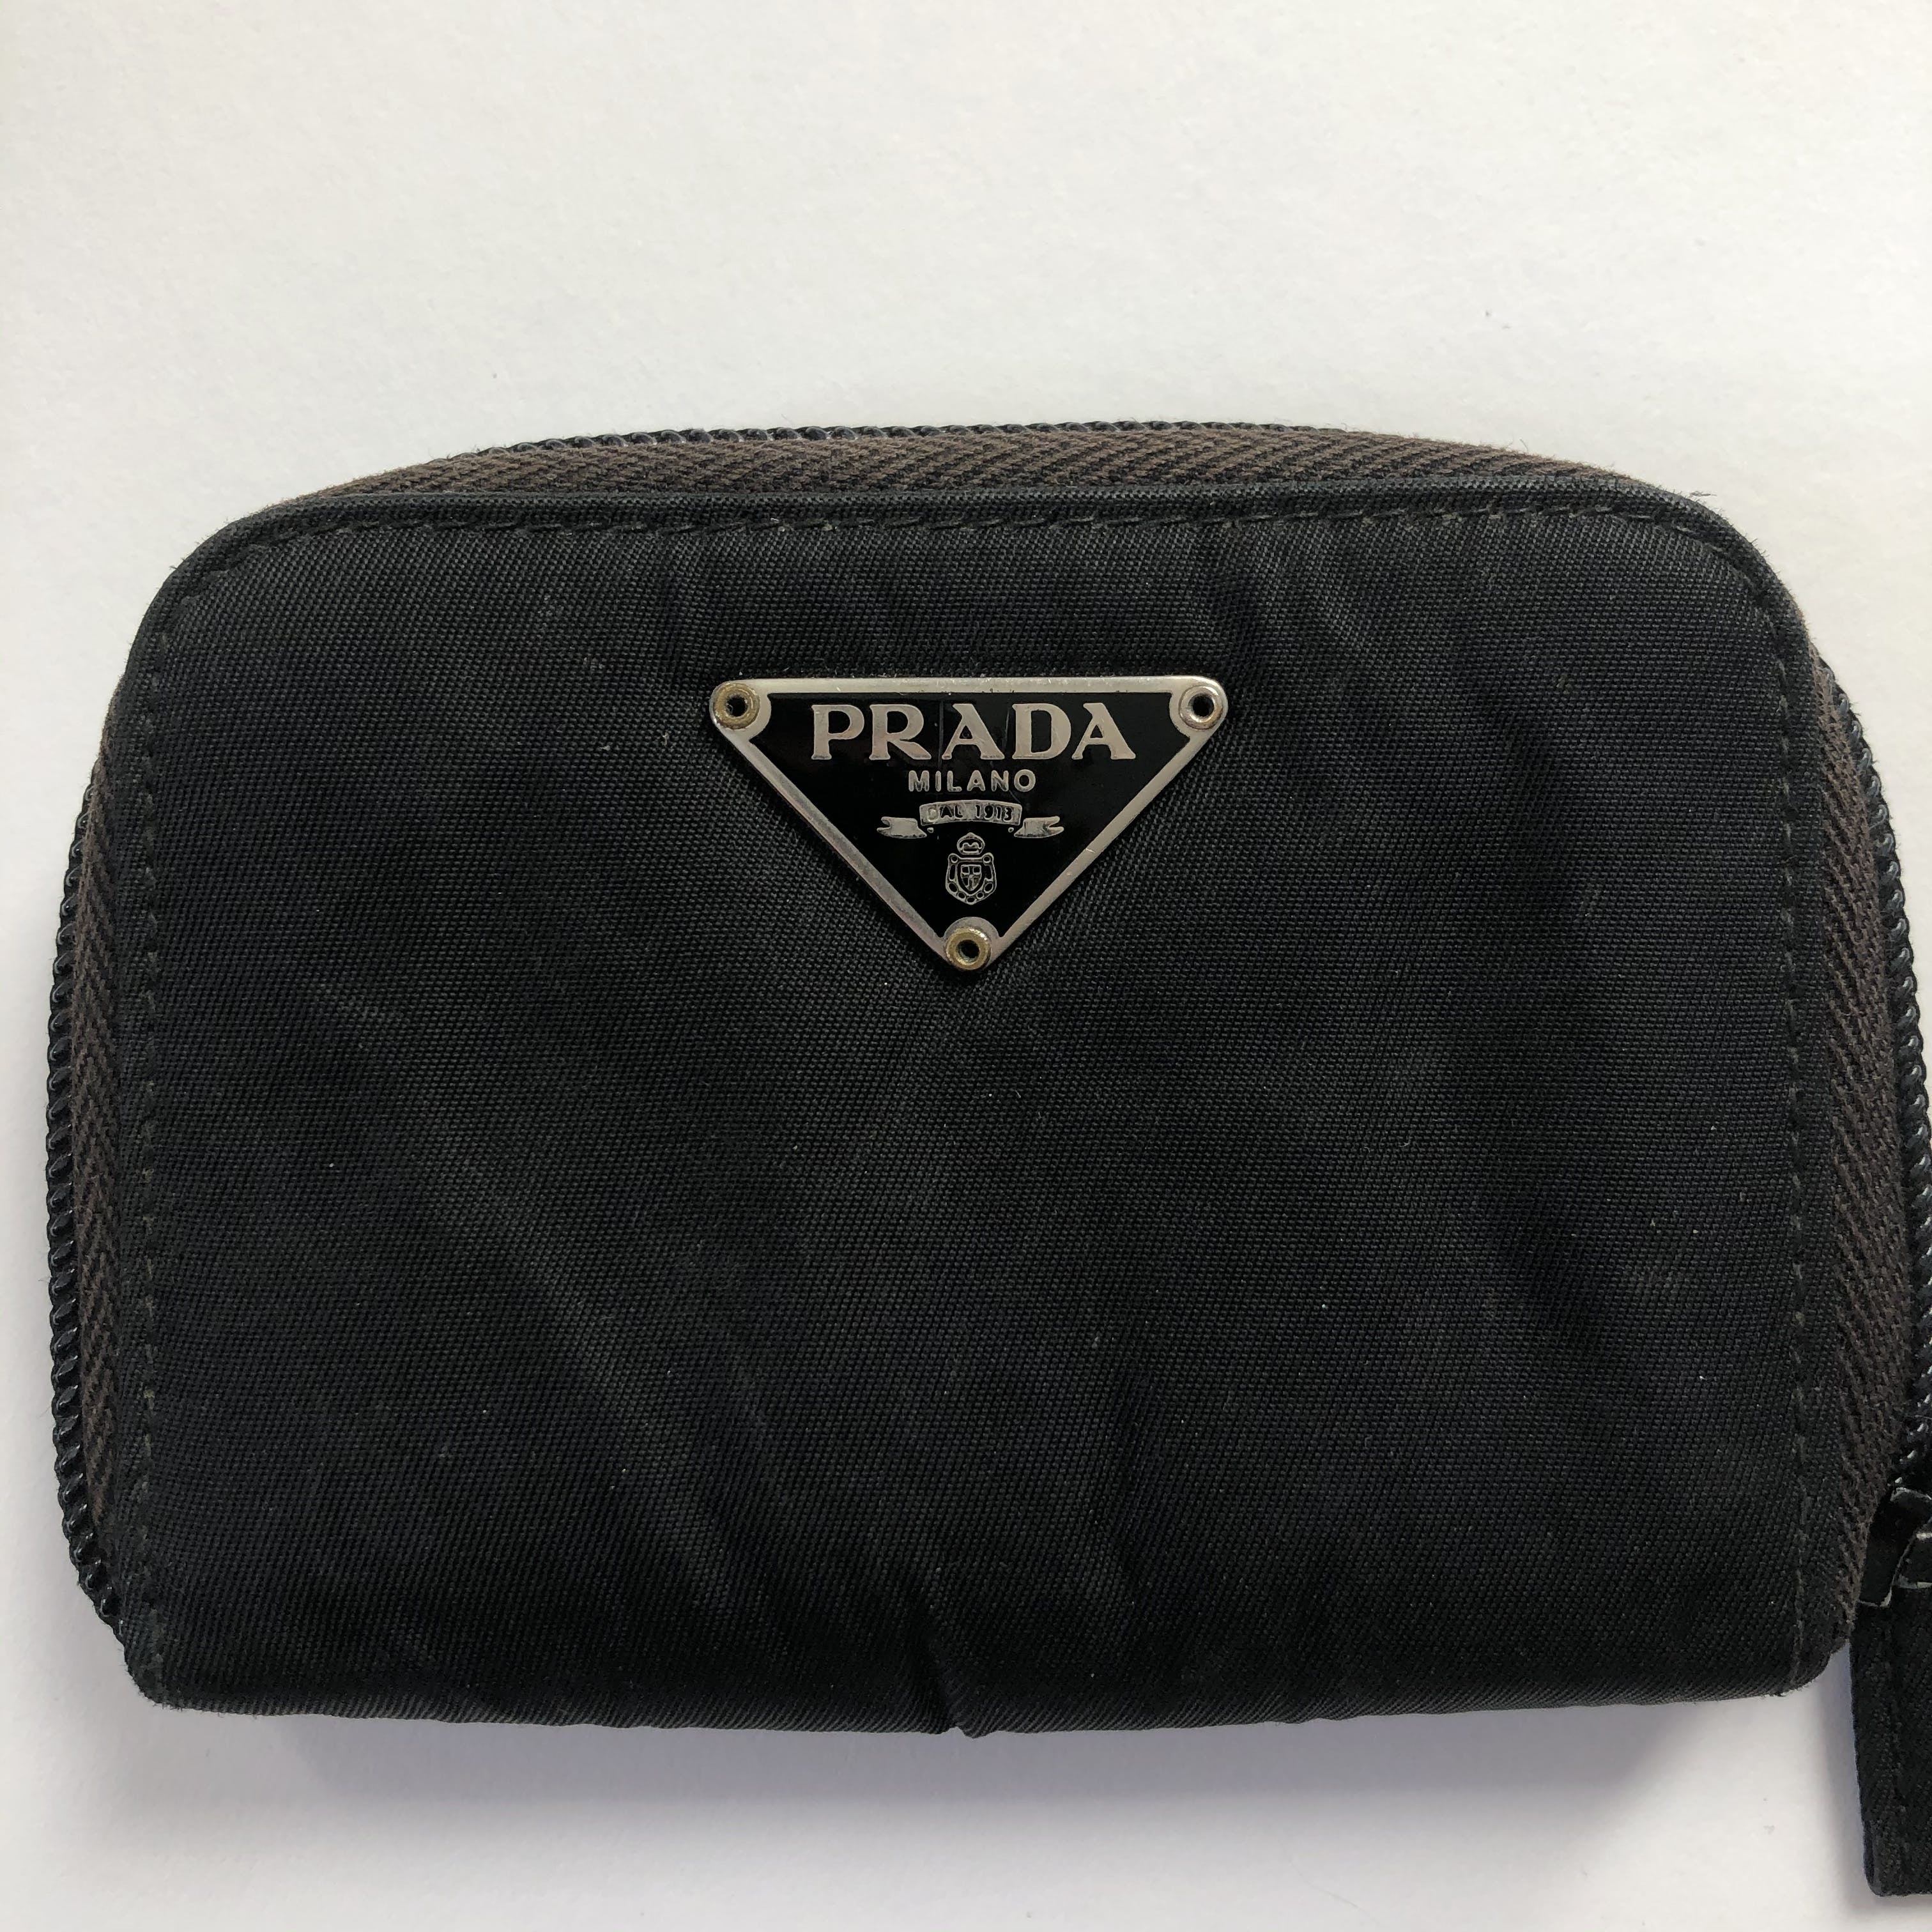 prada money purse